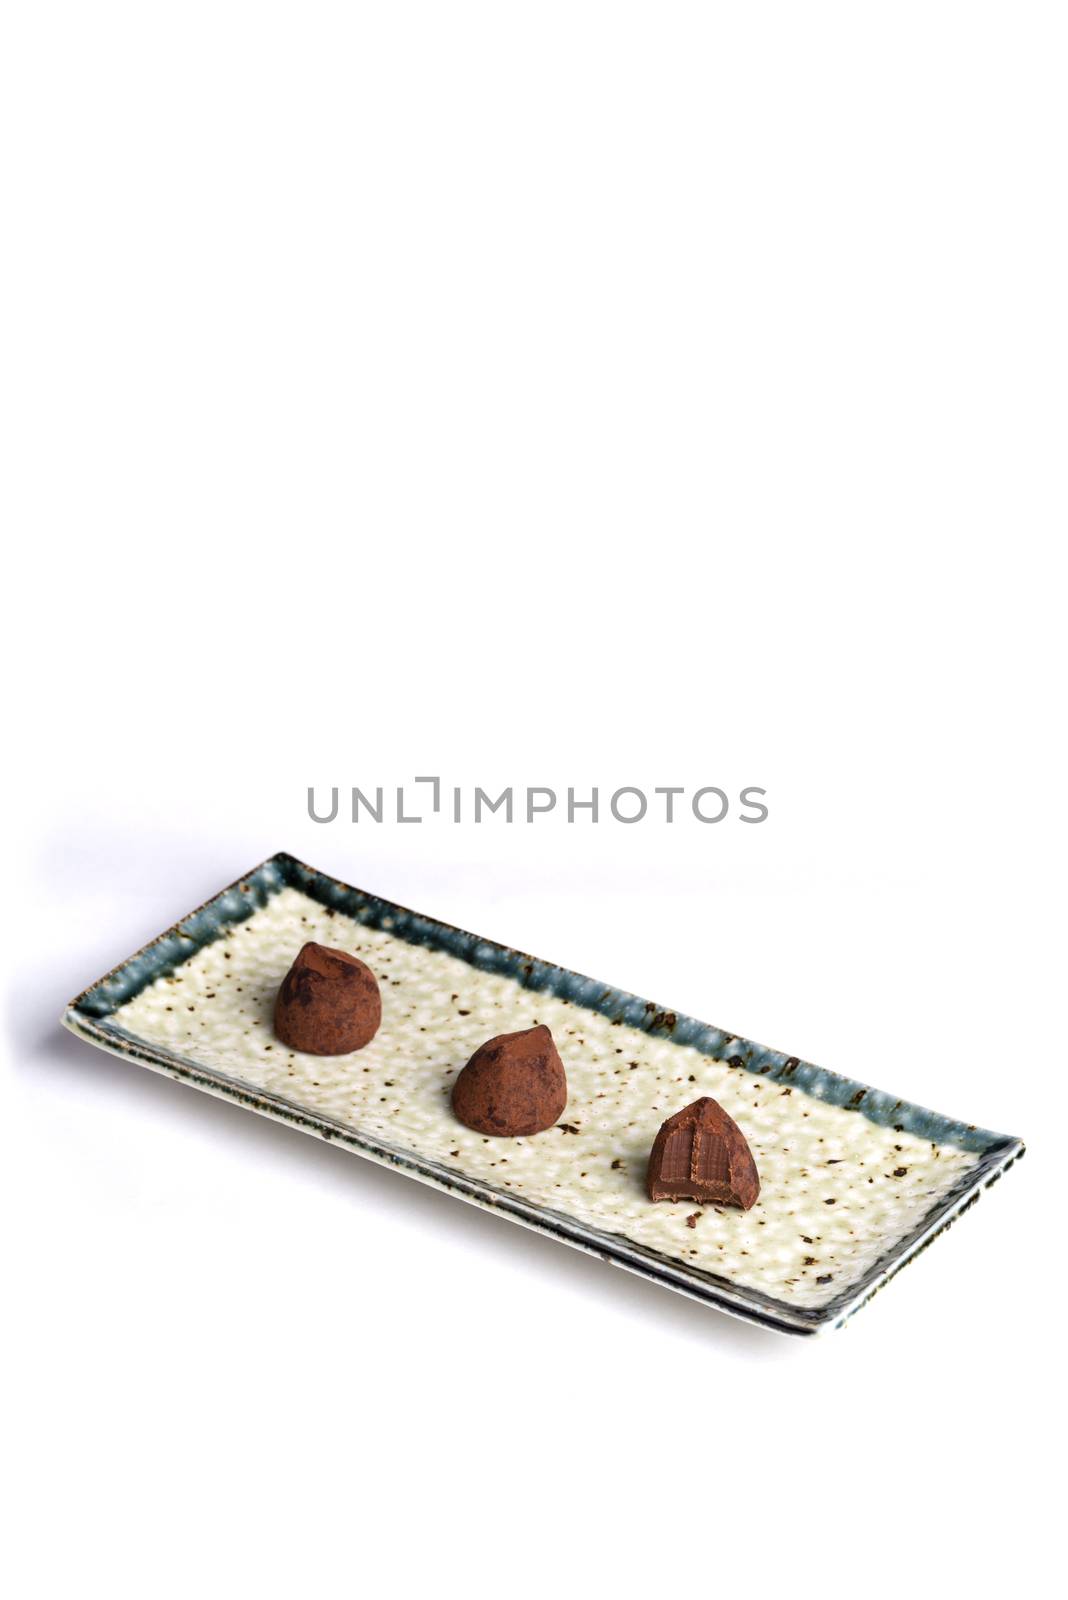 Chocolate Truffles by justtscott